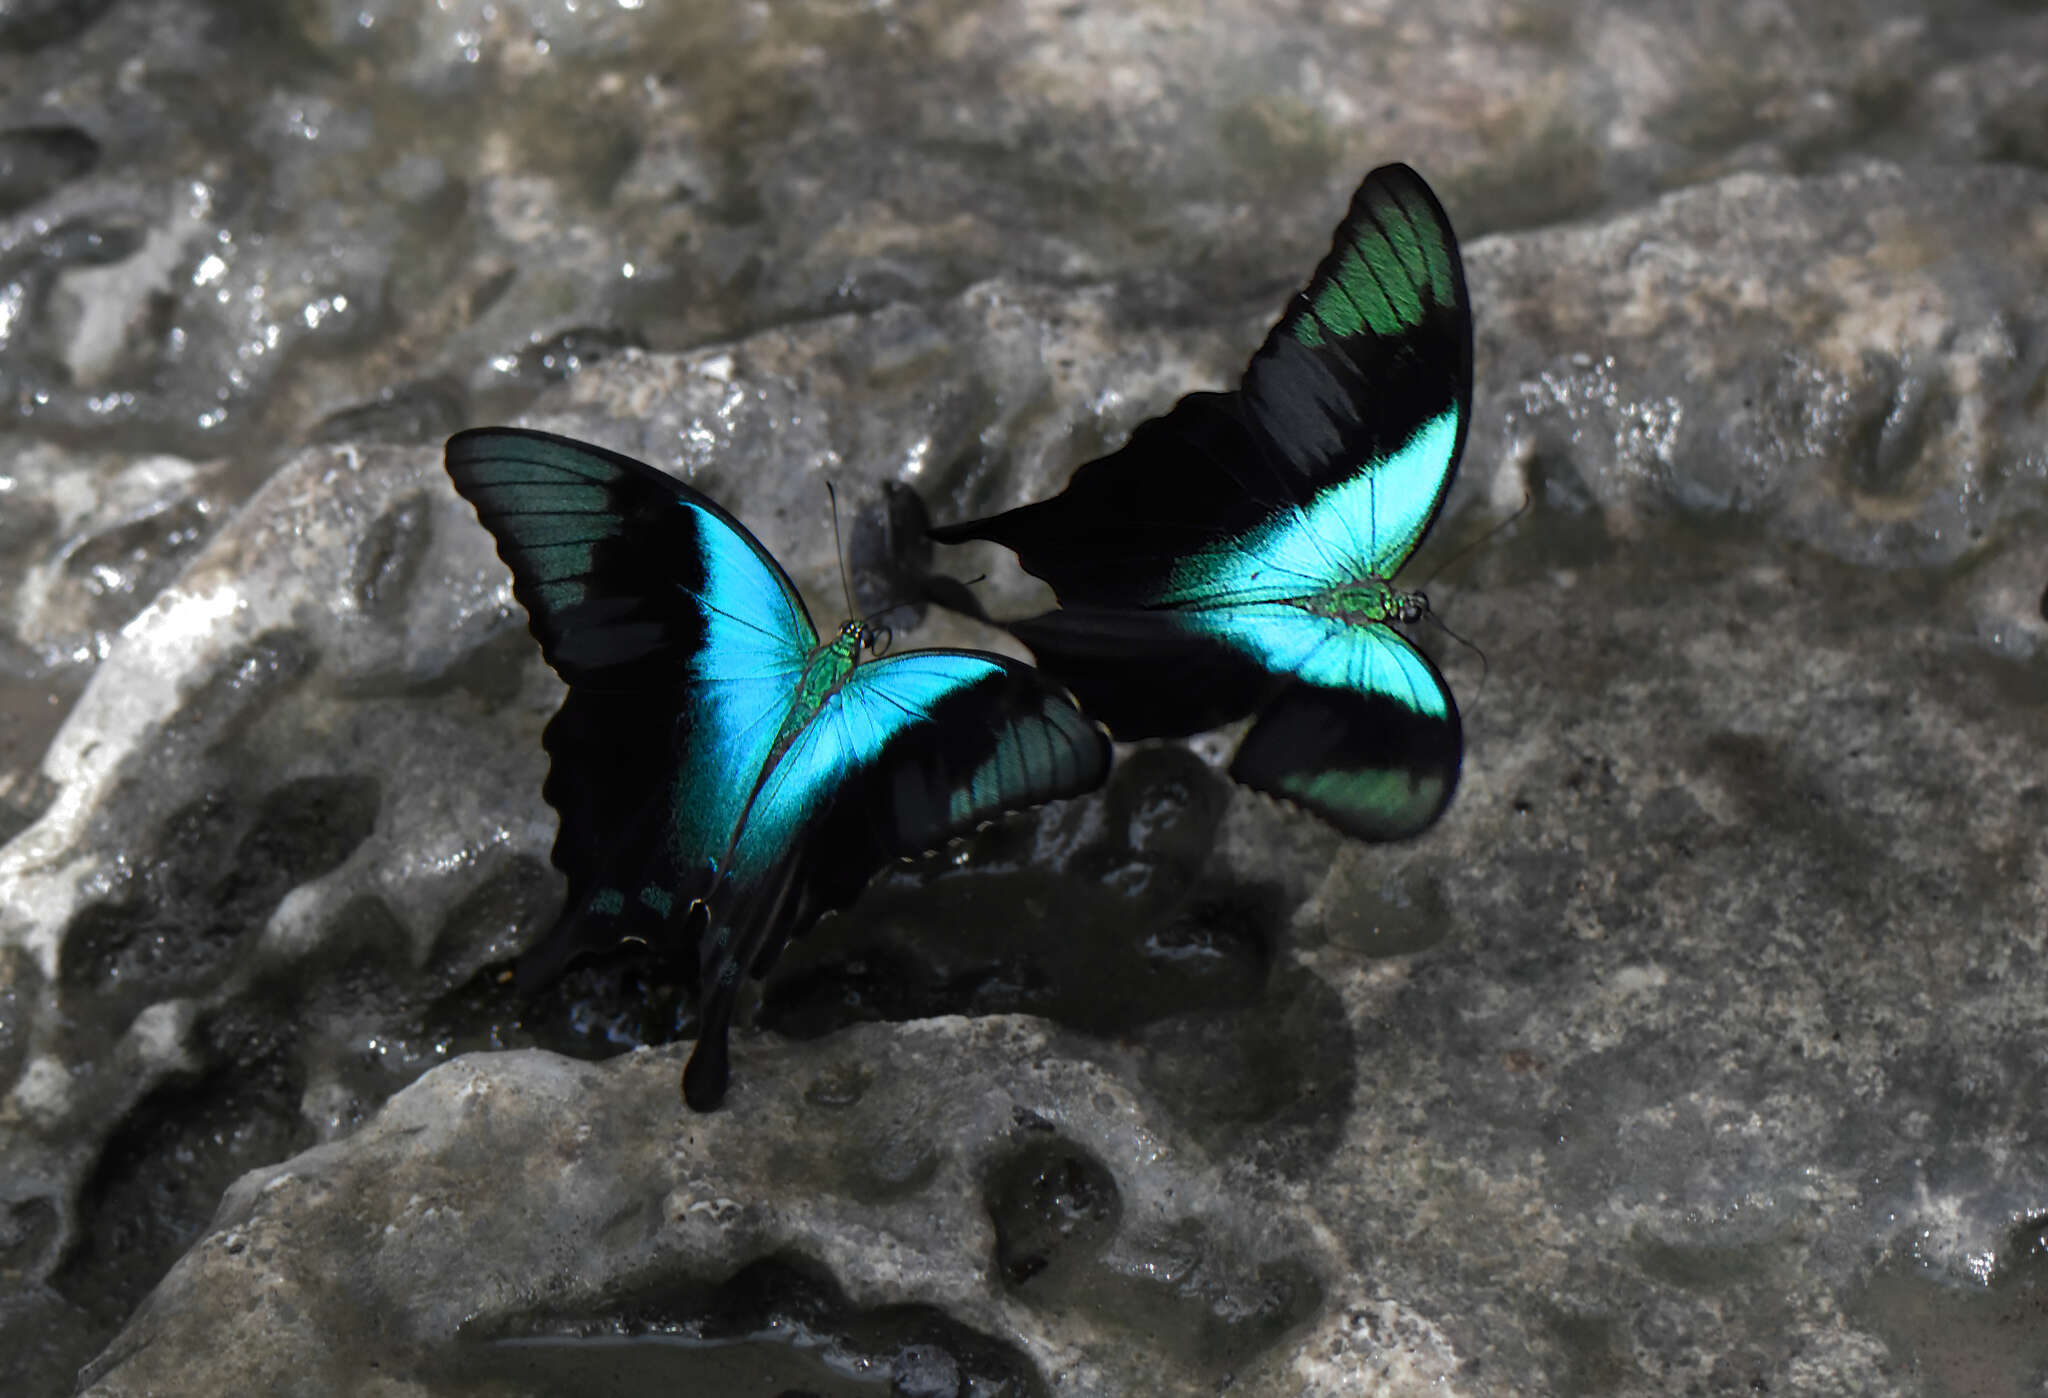 Image de Papilio peranthus Fabricius 1787